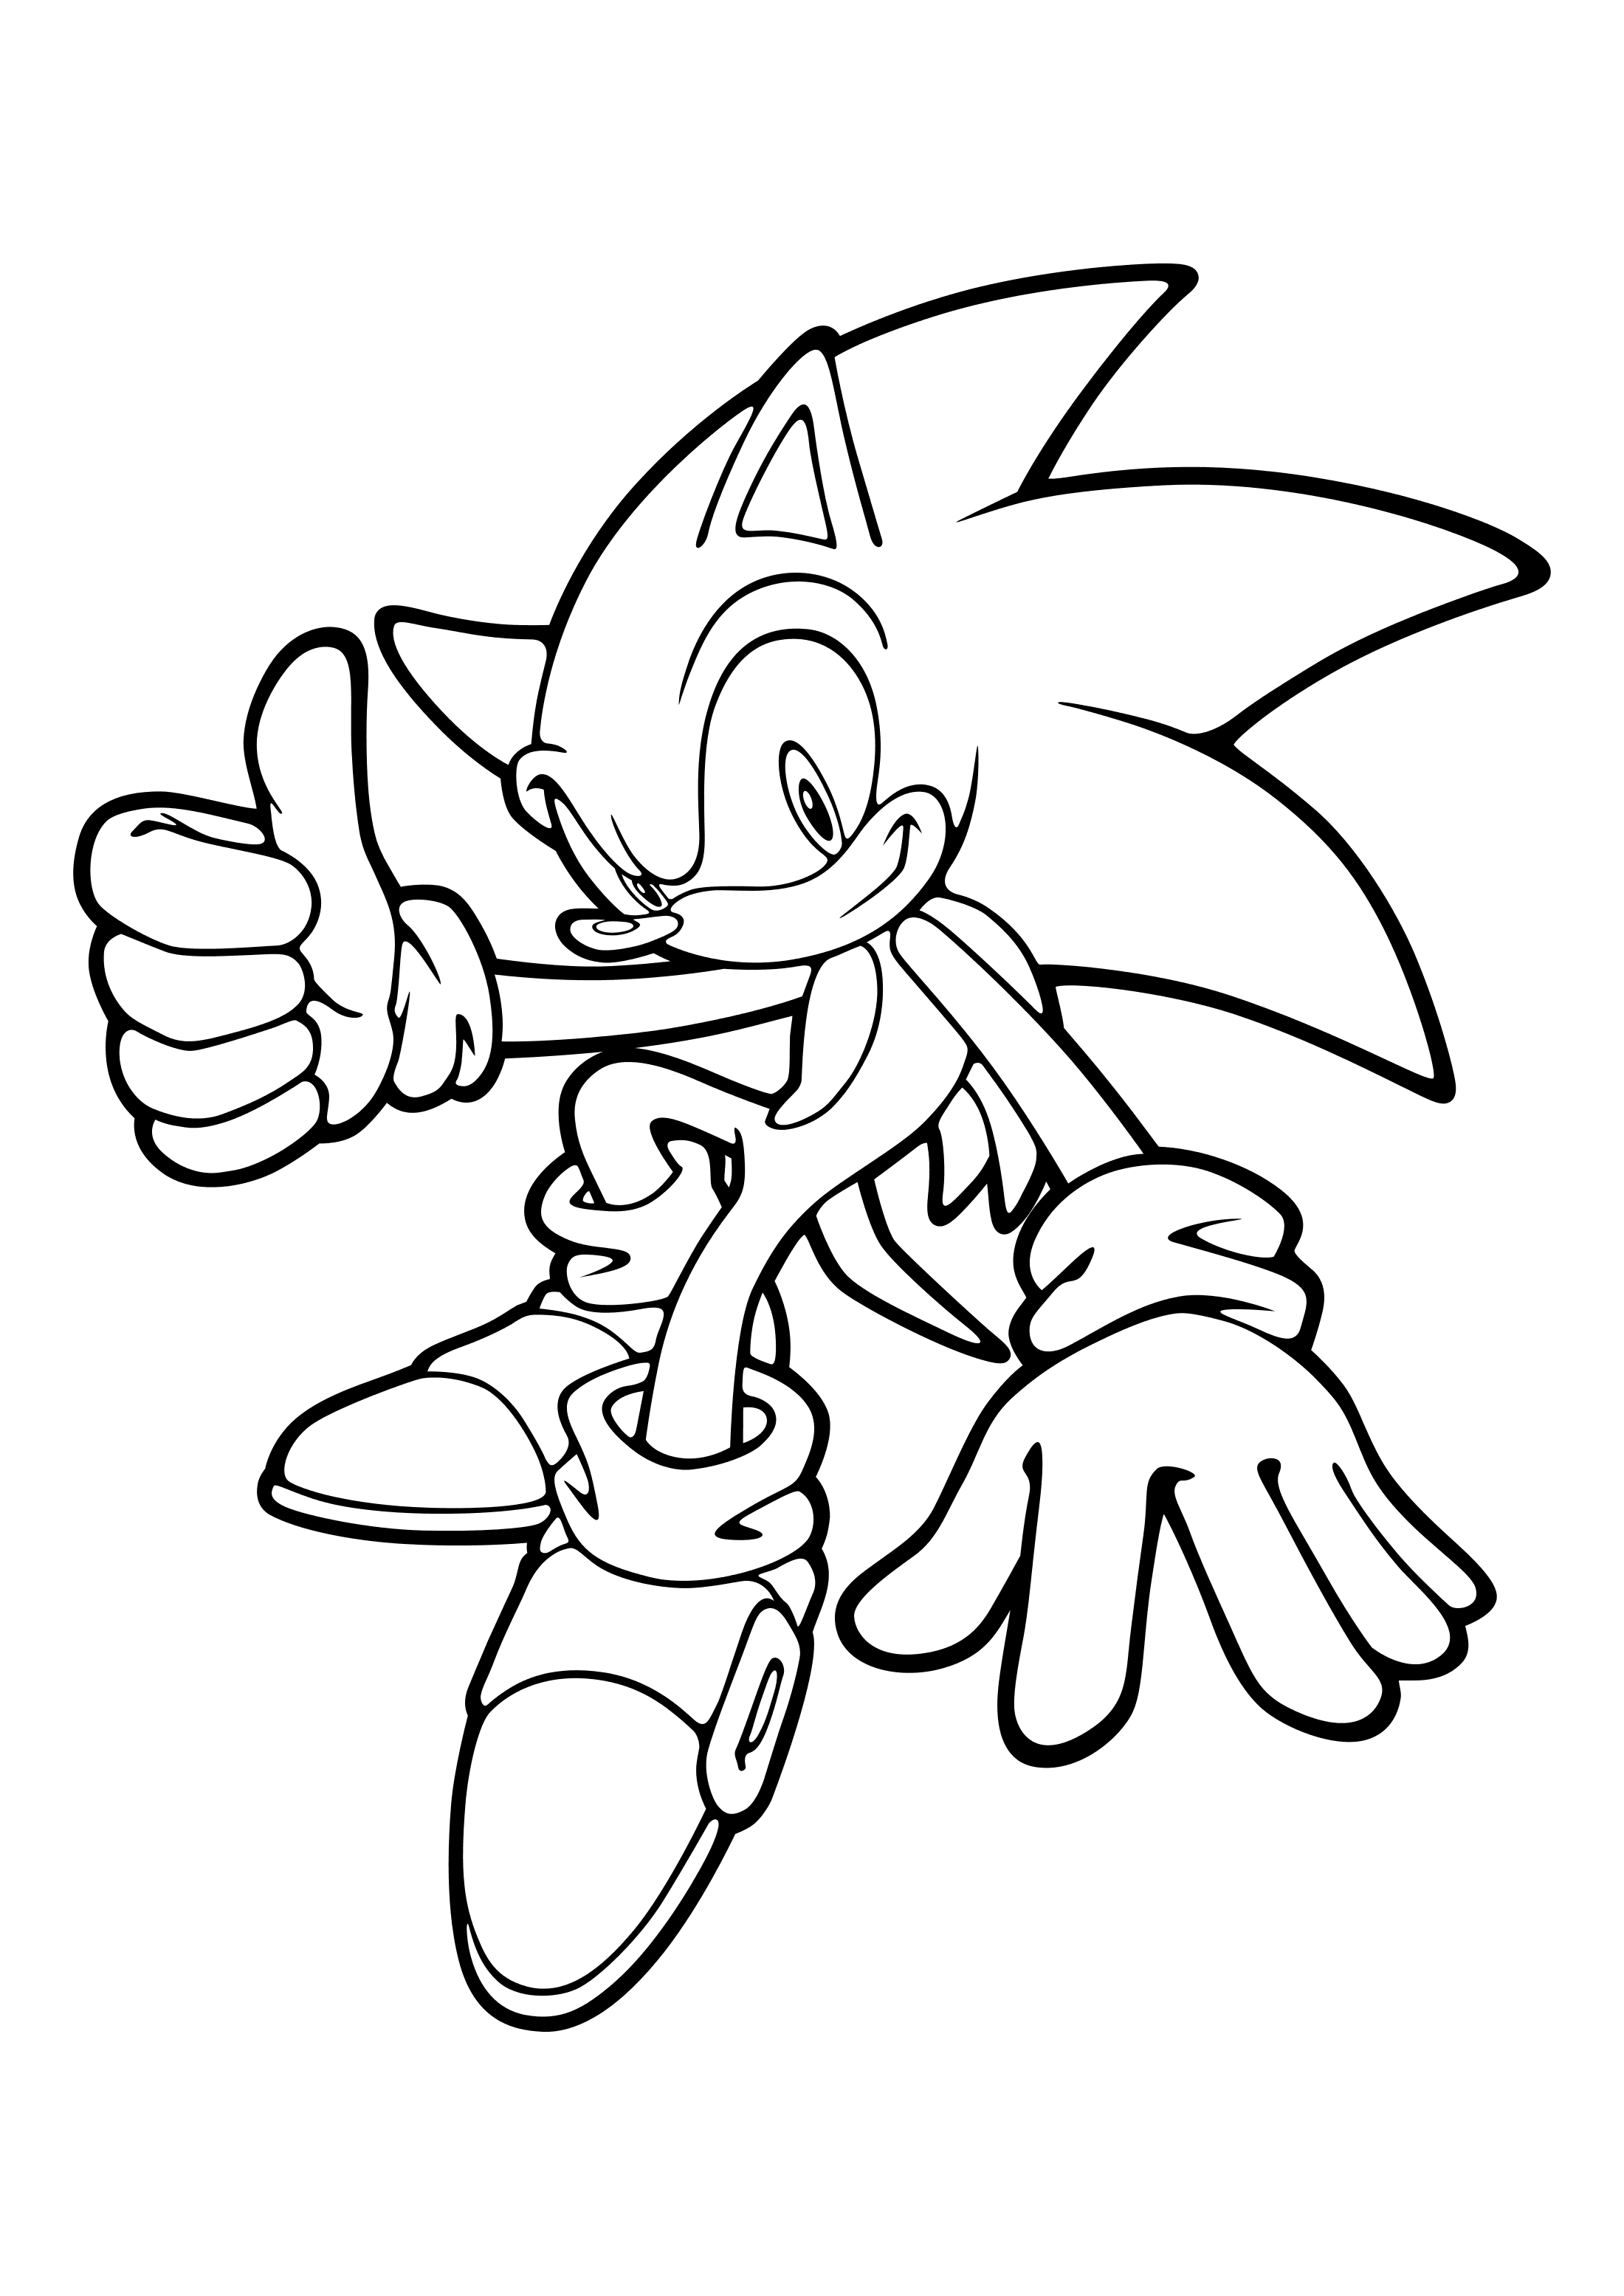 Para Colorear Sonic Muestra que todo está bien